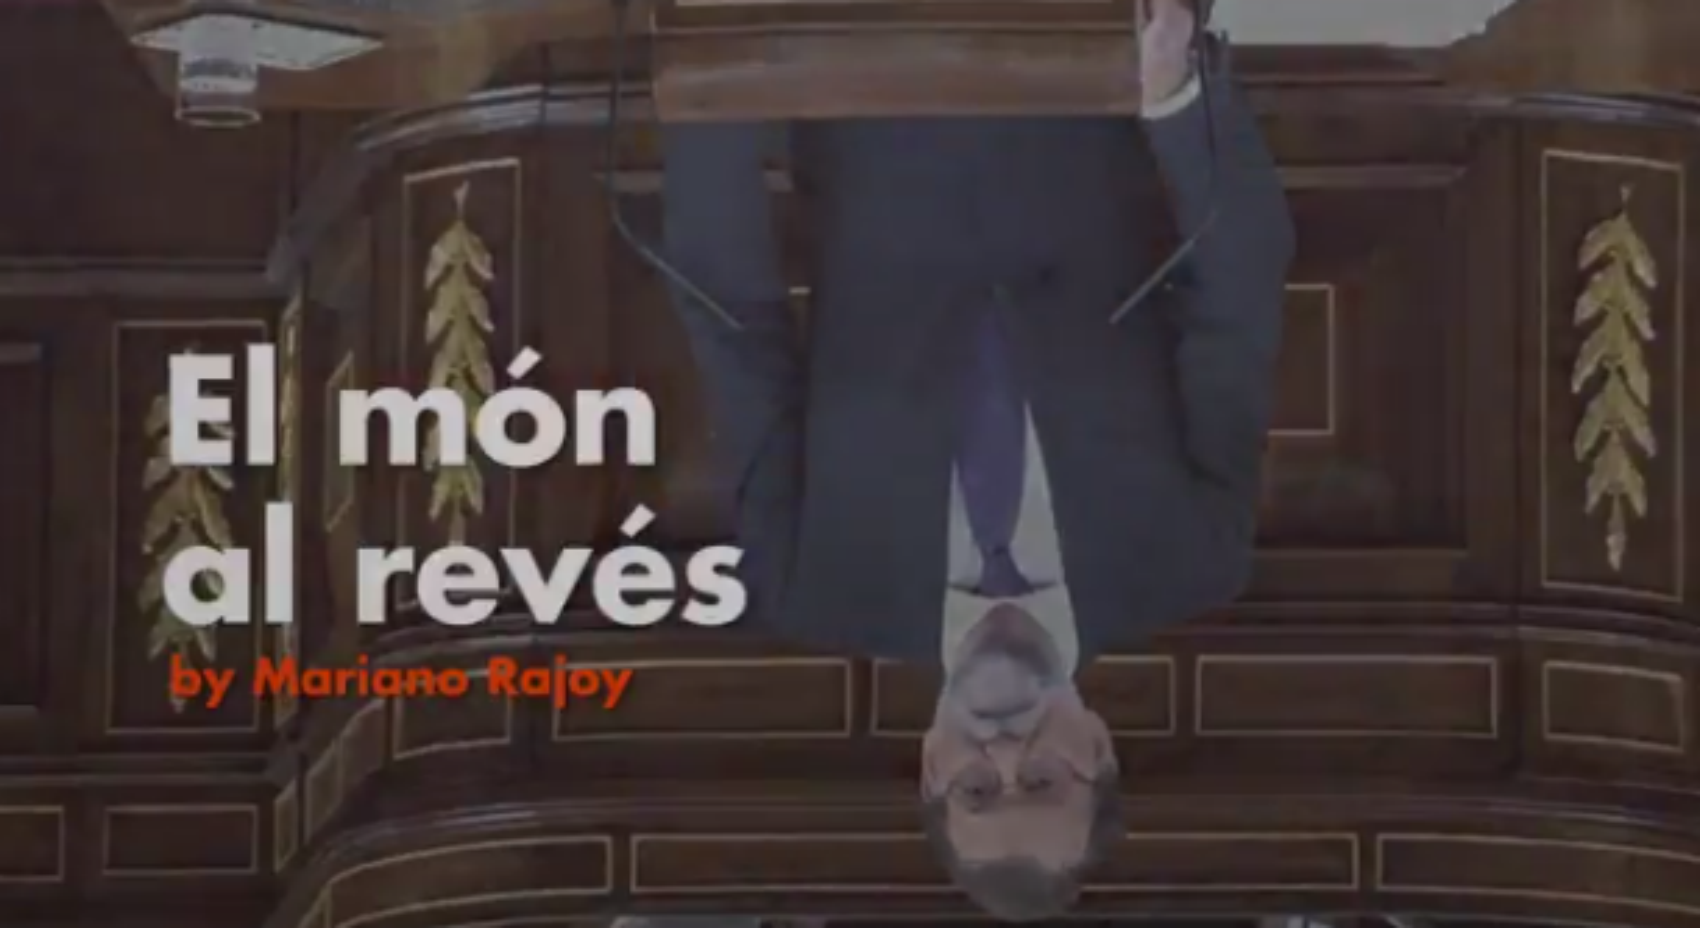 Un nou vídeo d'Òmnium denuncia 'el món al revés' de Rajoy